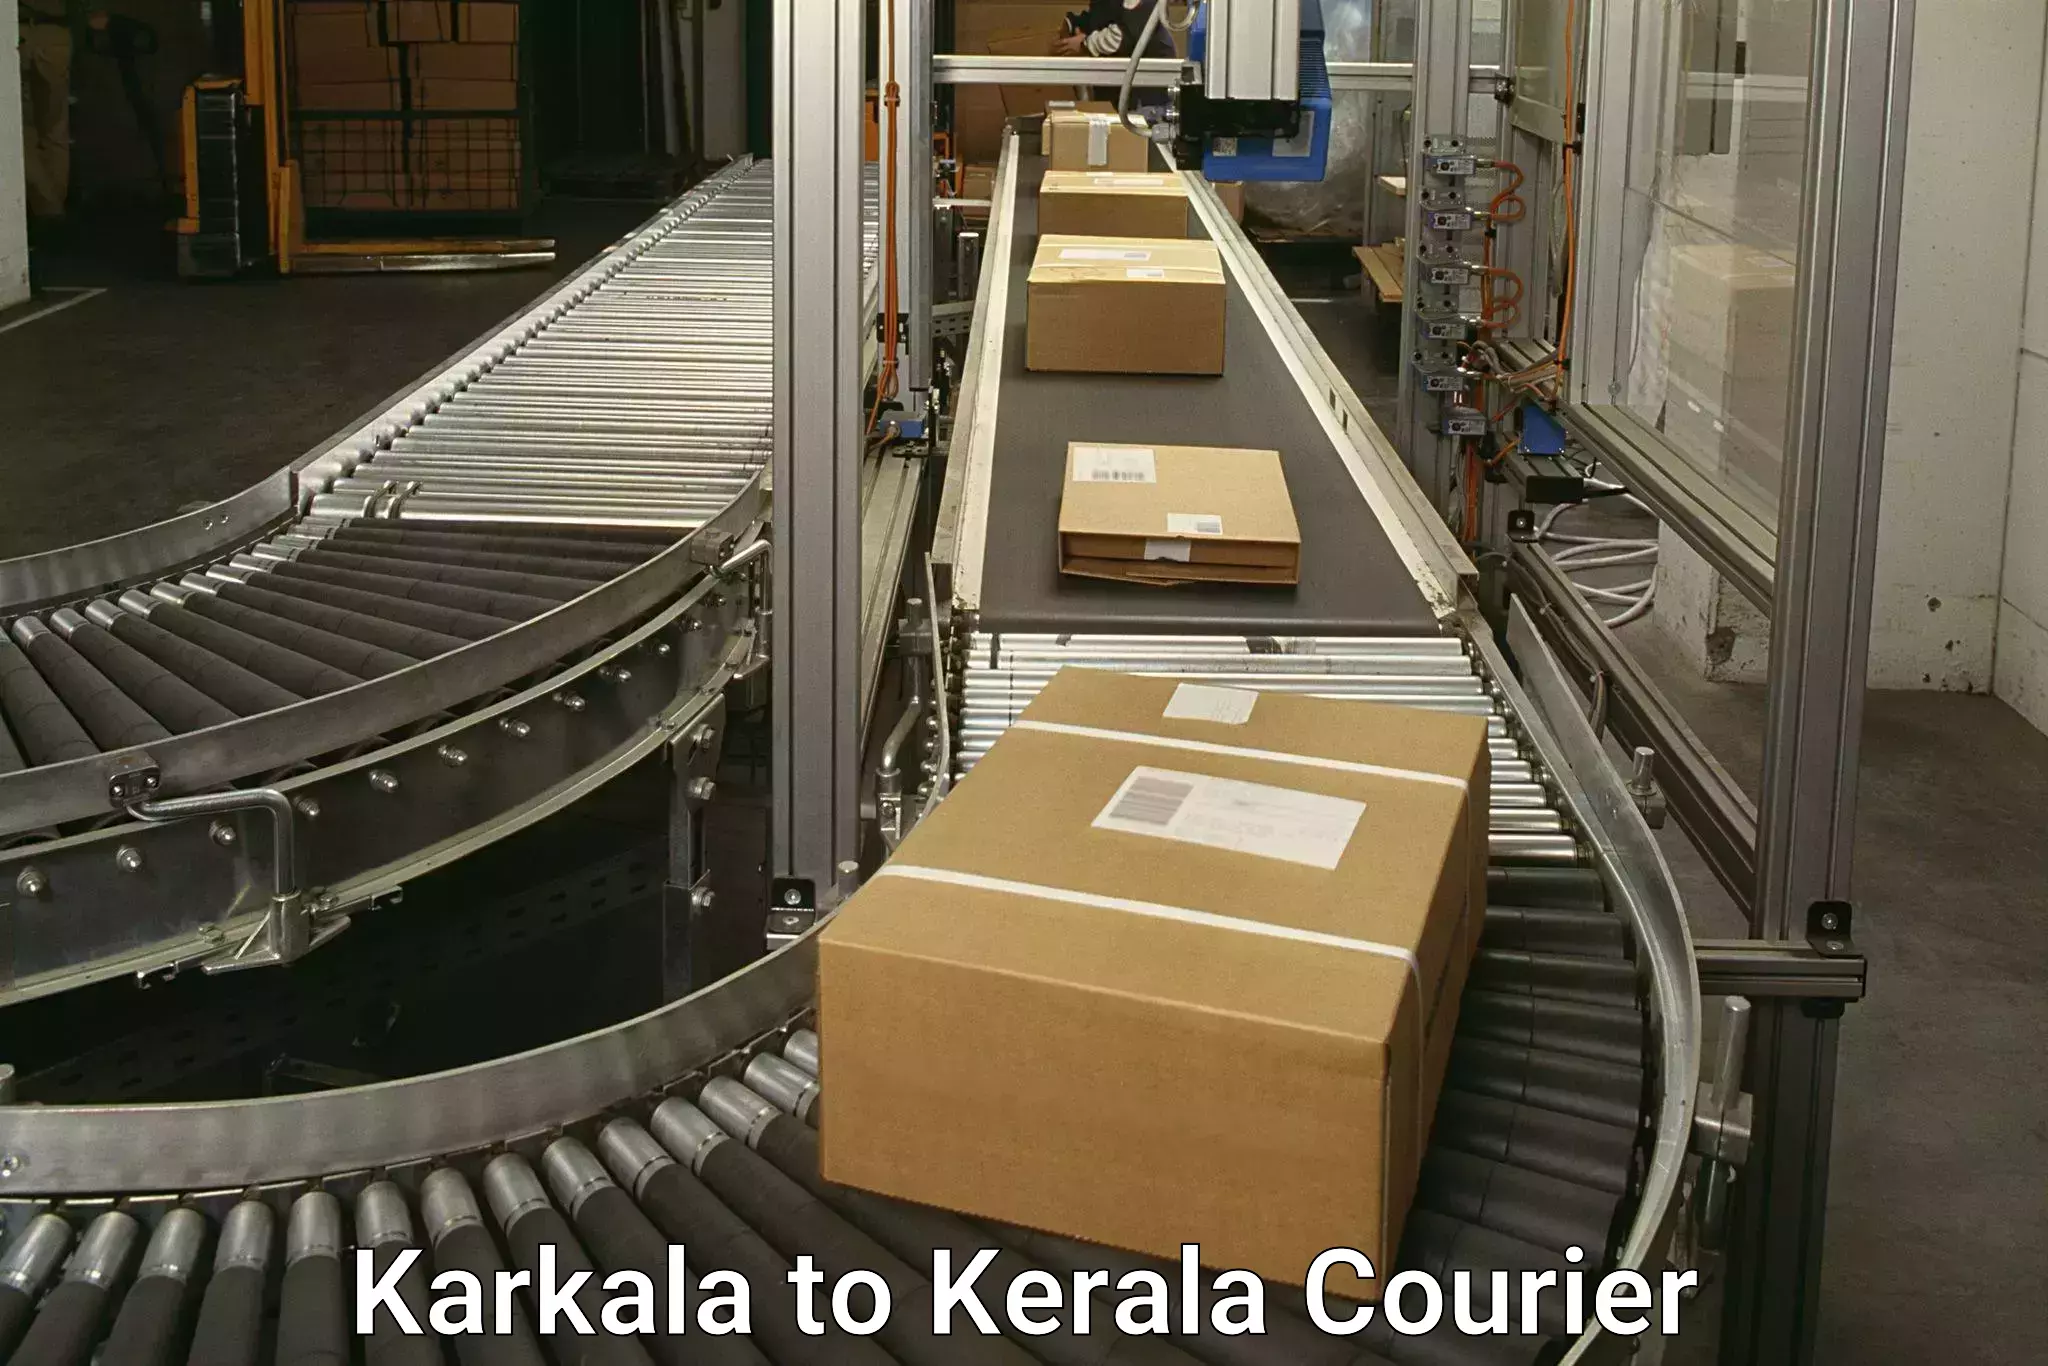 Flexible delivery schedules Karkala to Kilimanoor